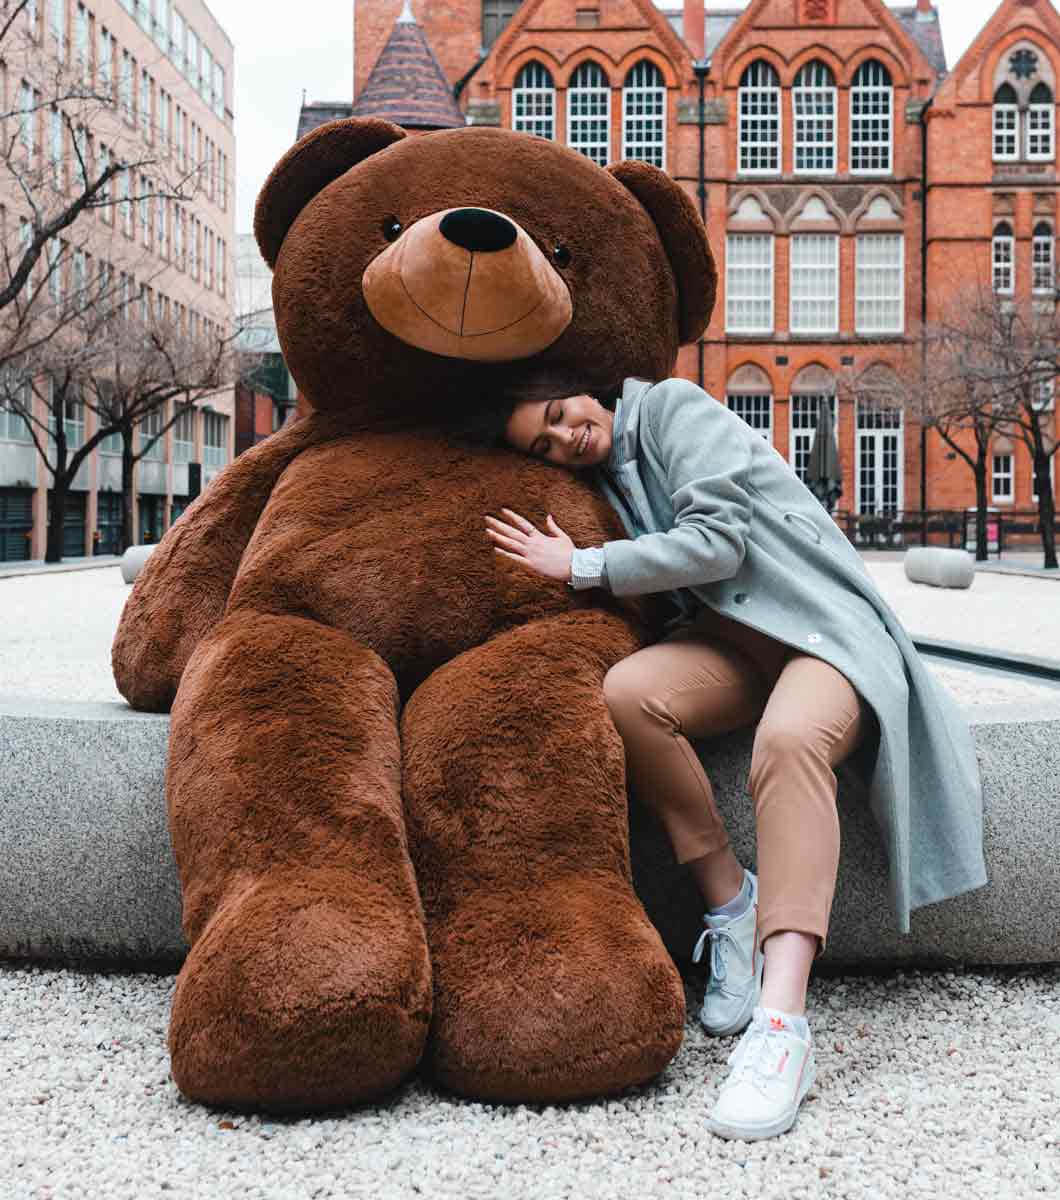 Enbild På En Glad Teddybjörn Som Sitter På En Säng